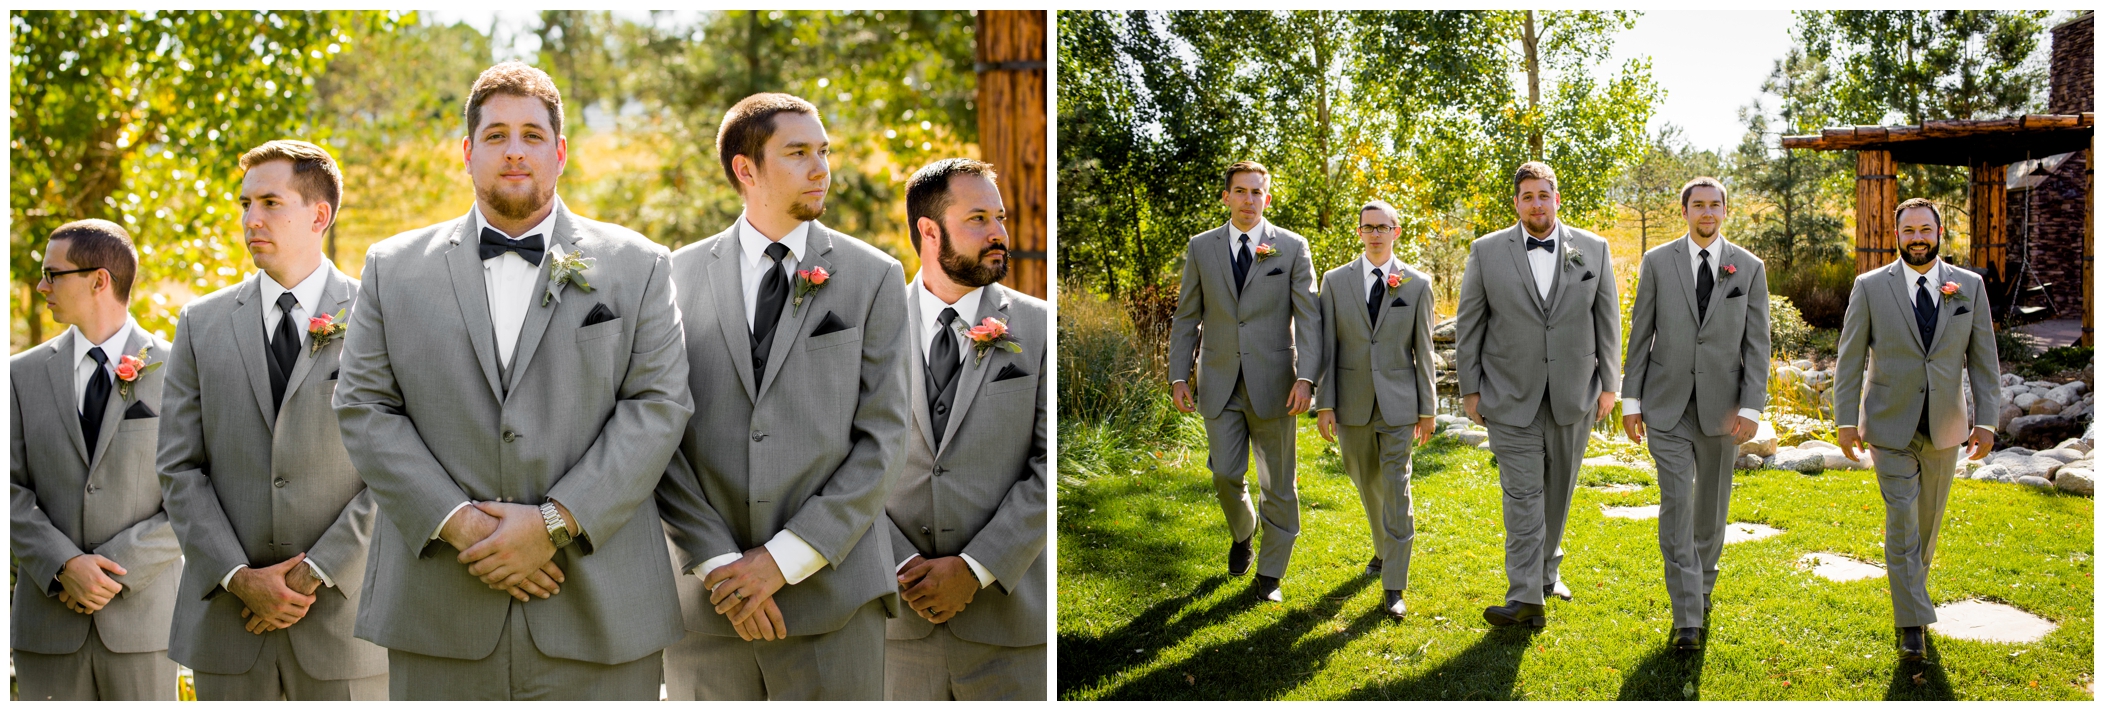 Colorado groomsmen in gray 